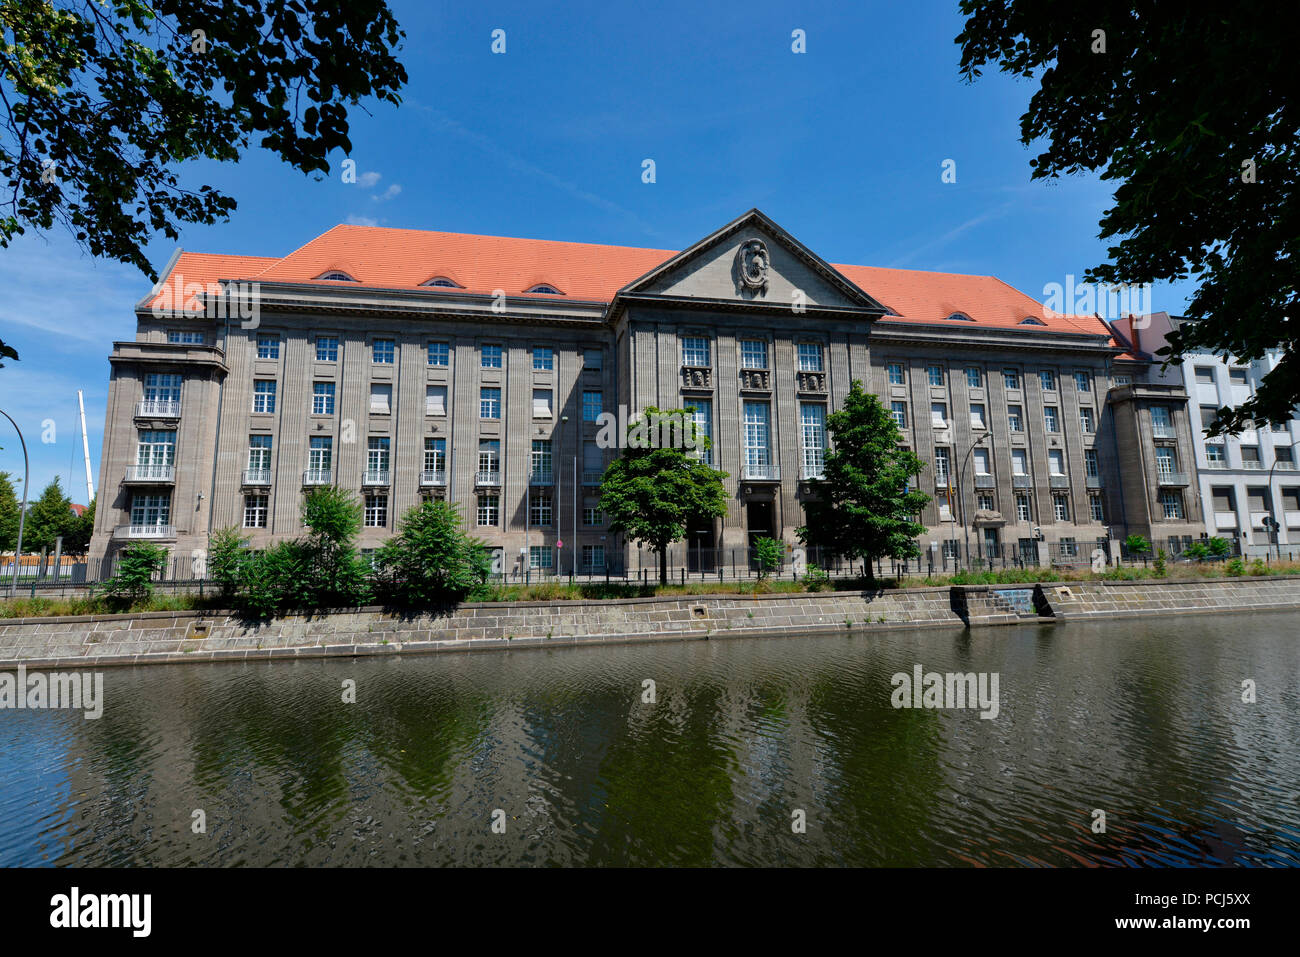 Bundesministerium der Verteidigung, Reichpietschufer, Tiergarten, Mitte, Berlin, Deutschland Banque D'Images